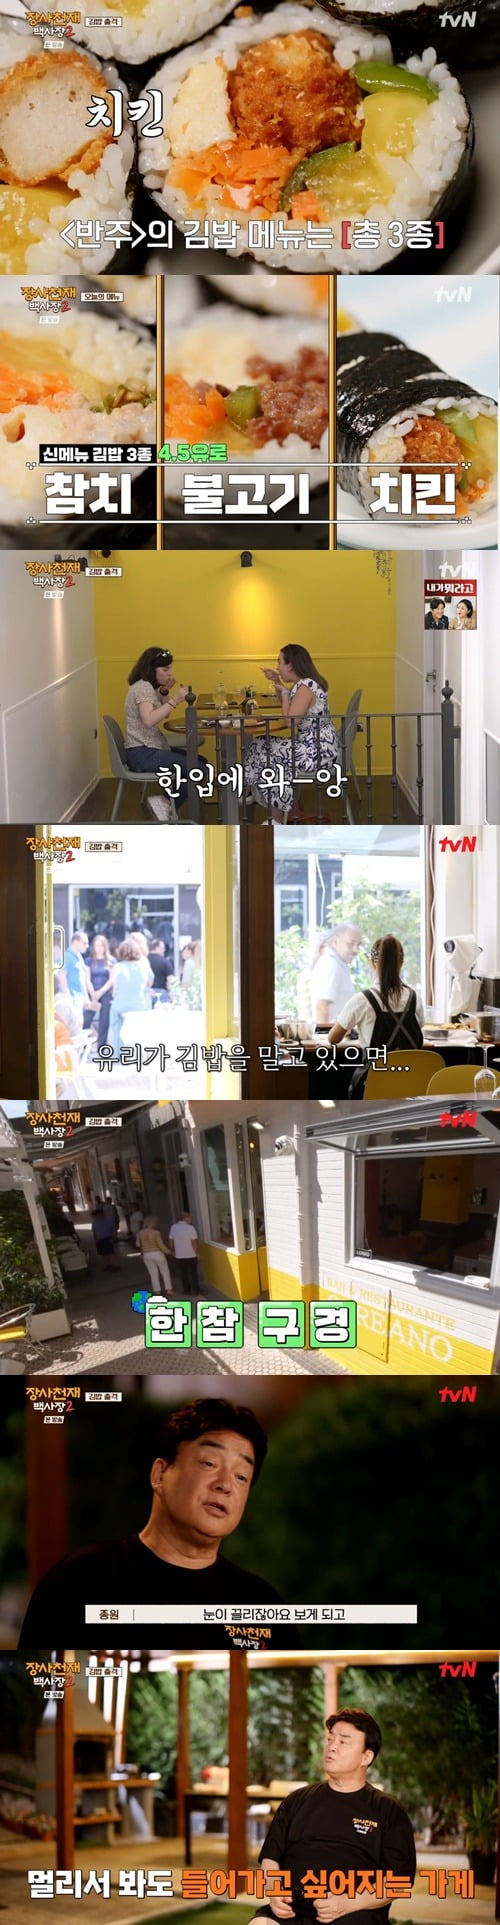 사진 = tvN ‘장사천재 백사장2’ 화면 캡쳐